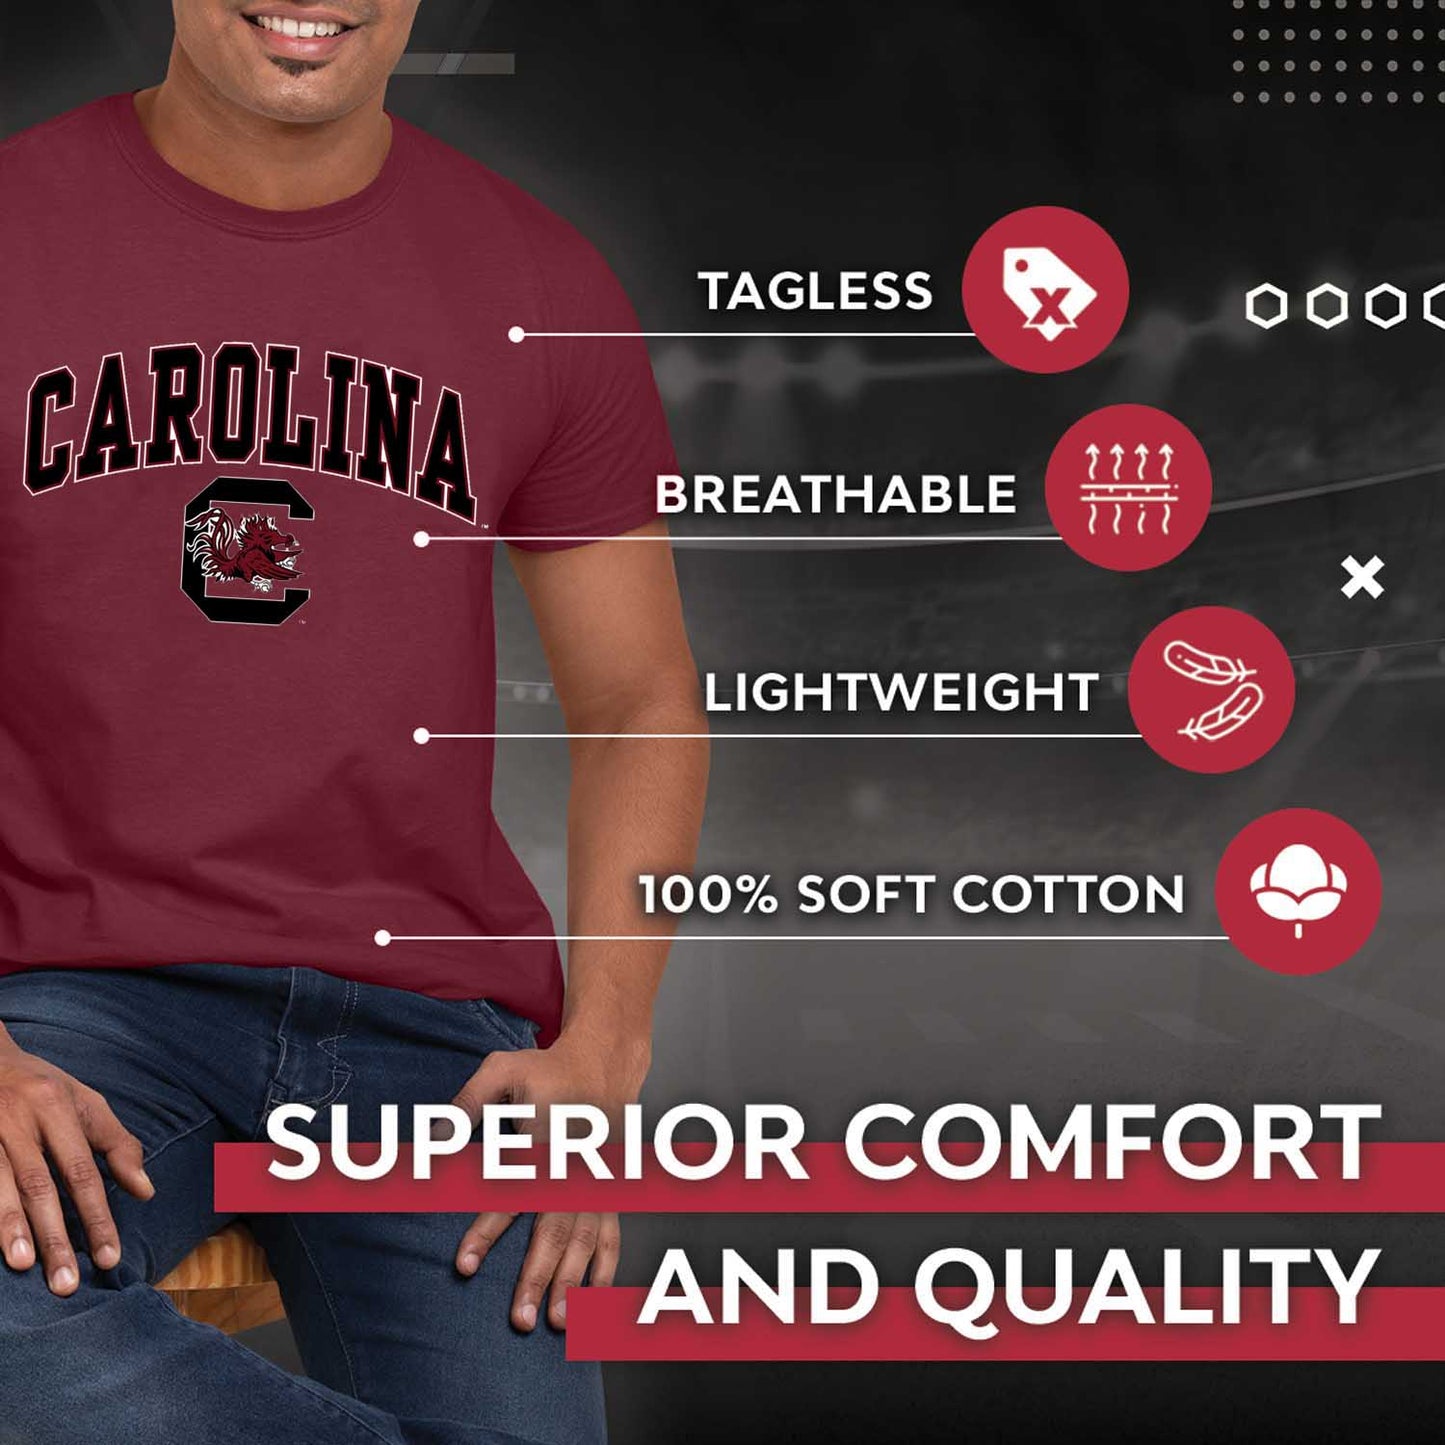 South Carolina Gamecocks  Arch and Logo Short Sleeve T-shirt - Cardinal